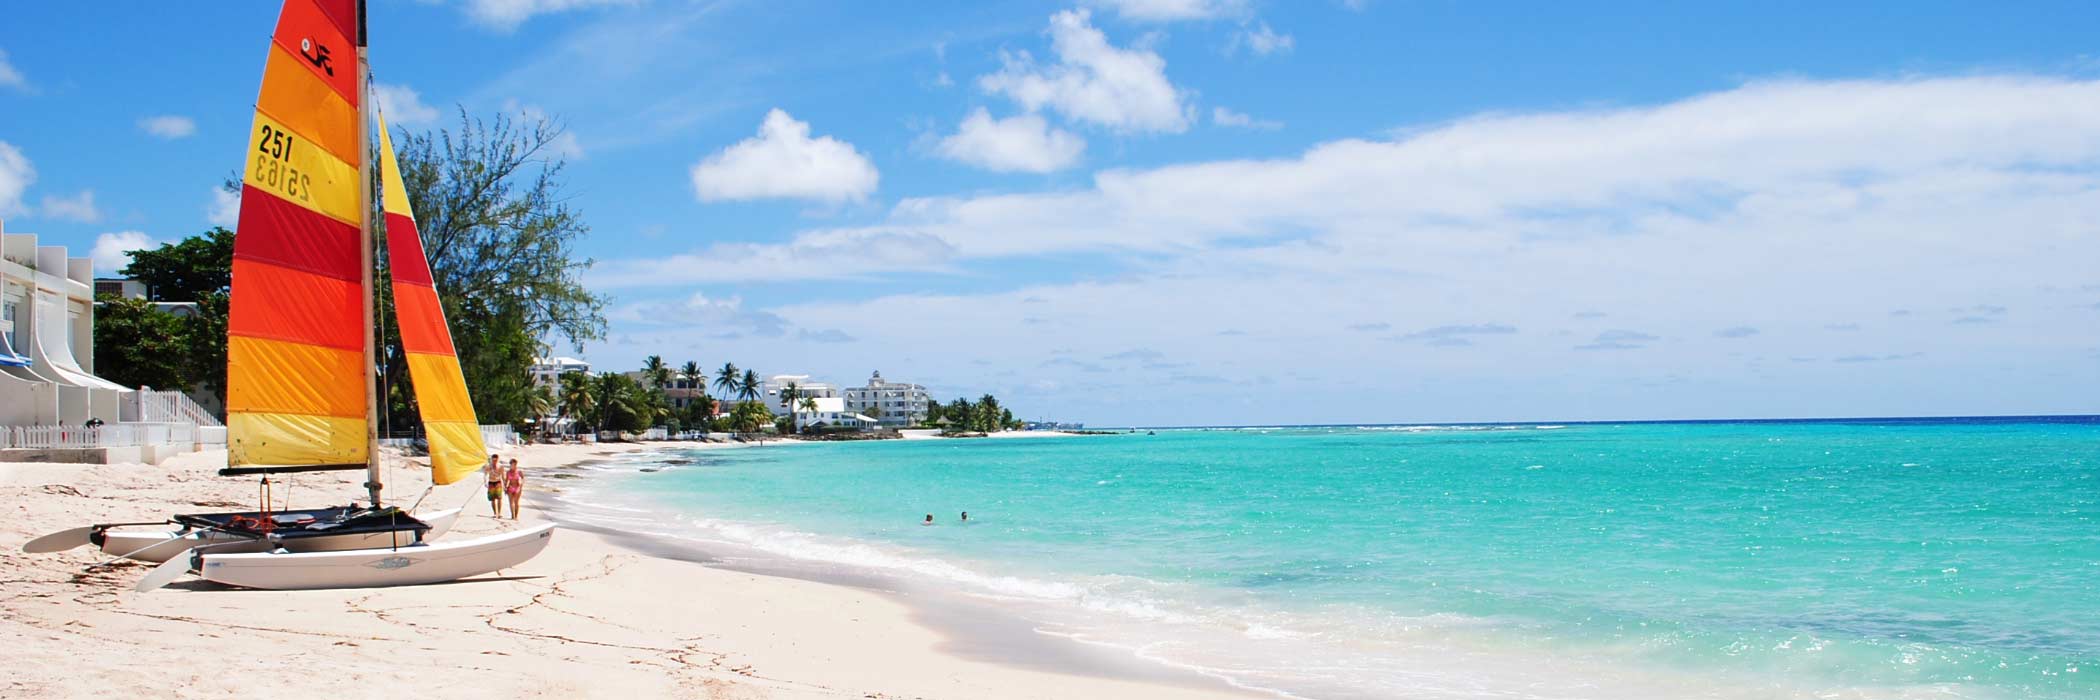 All Inclusive Barbados Holidays